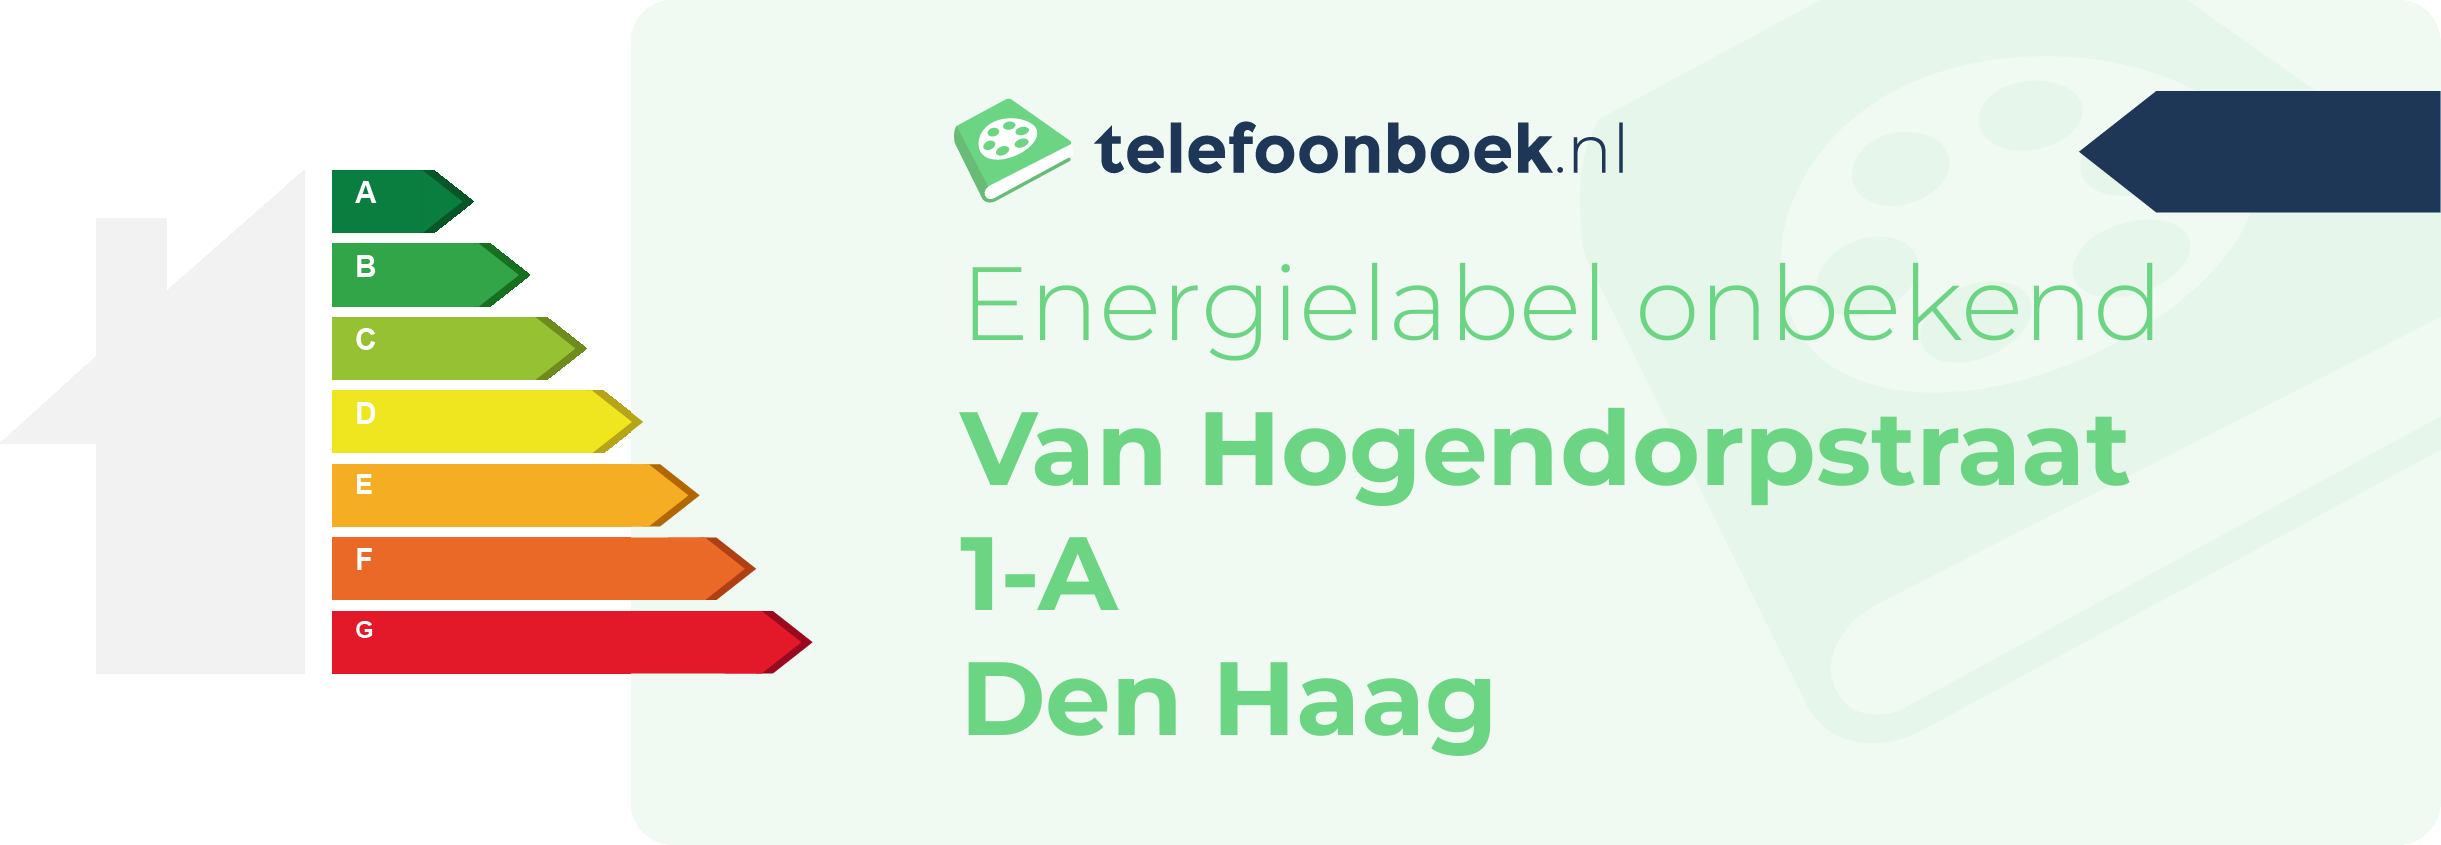 Energielabel Van Hogendorpstraat 1-A Den Haag